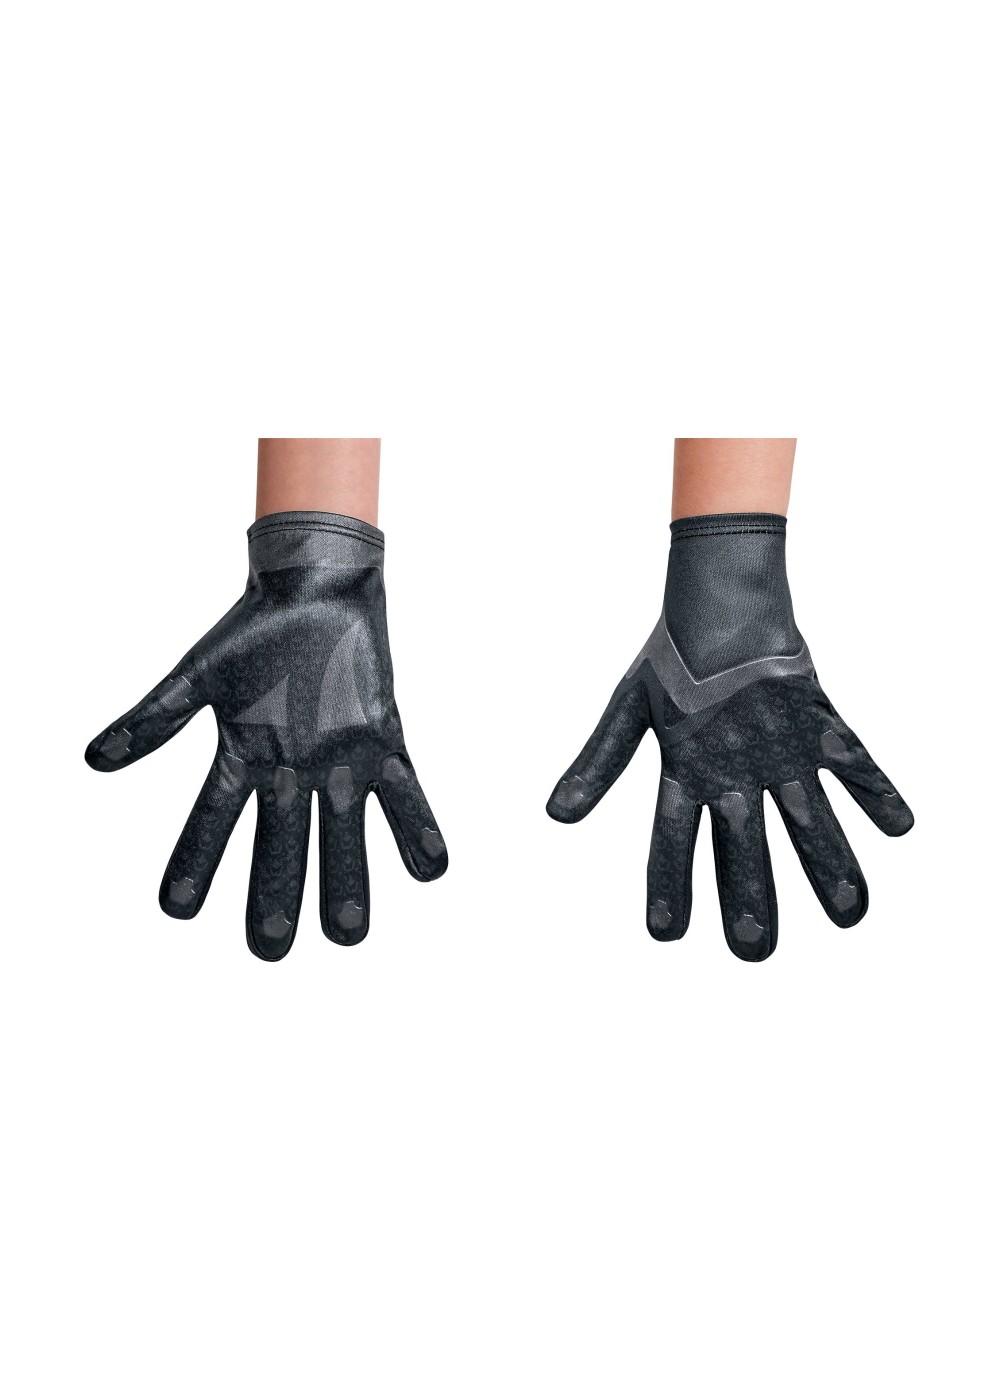 Black Power Rangers Boys Movie Costume Gloves